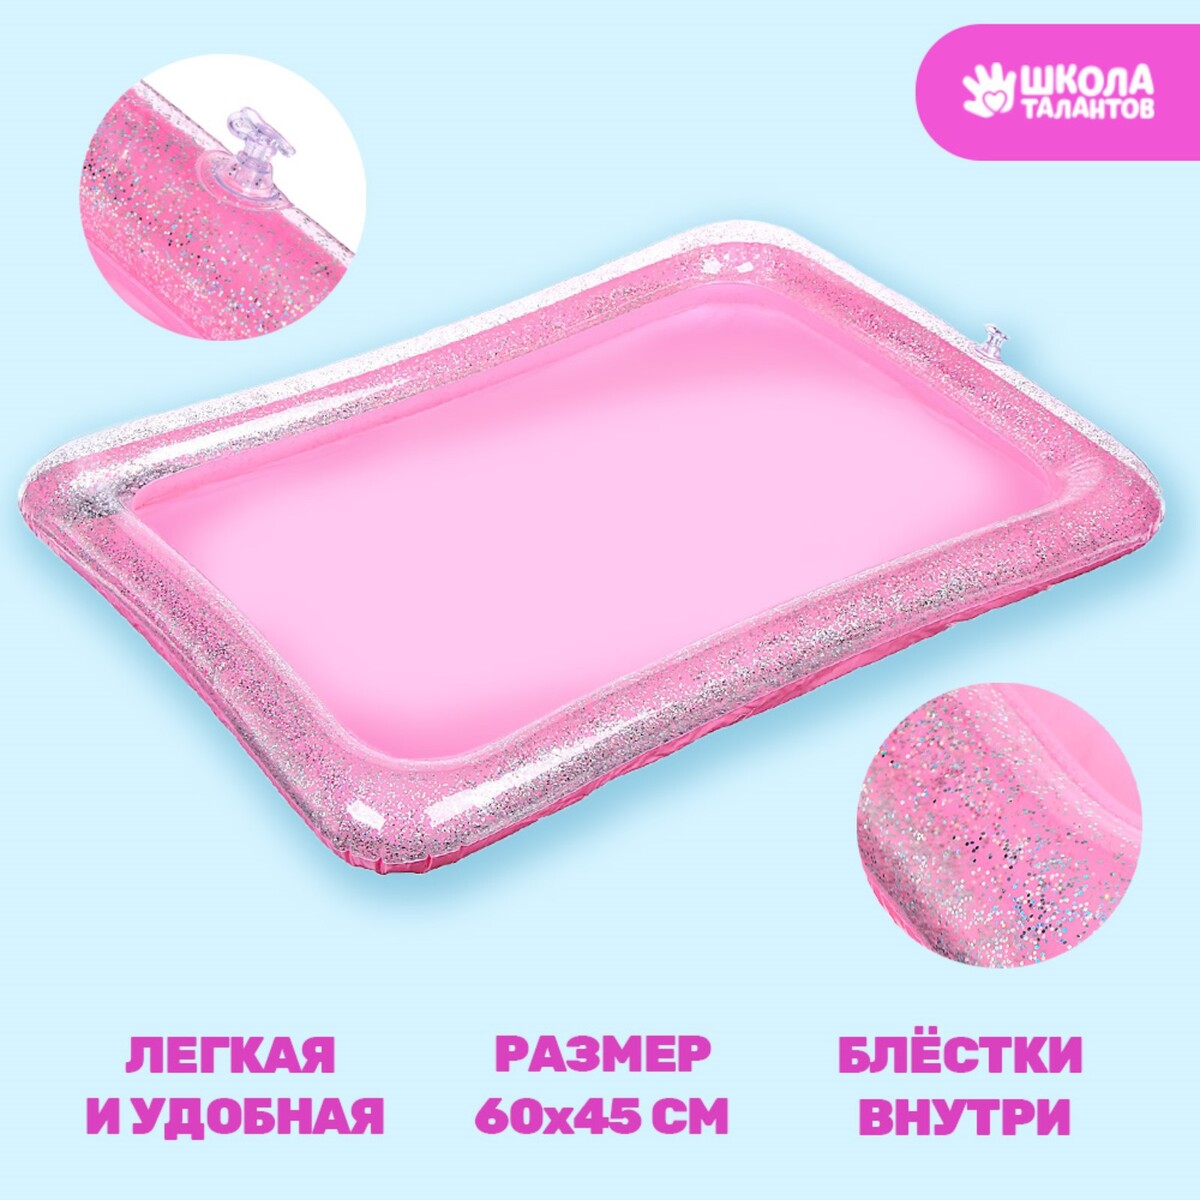 Надувная песочница с блестками, 60х45 см, цвет розовый надувная песочница с блёстками 60х45 см розовый